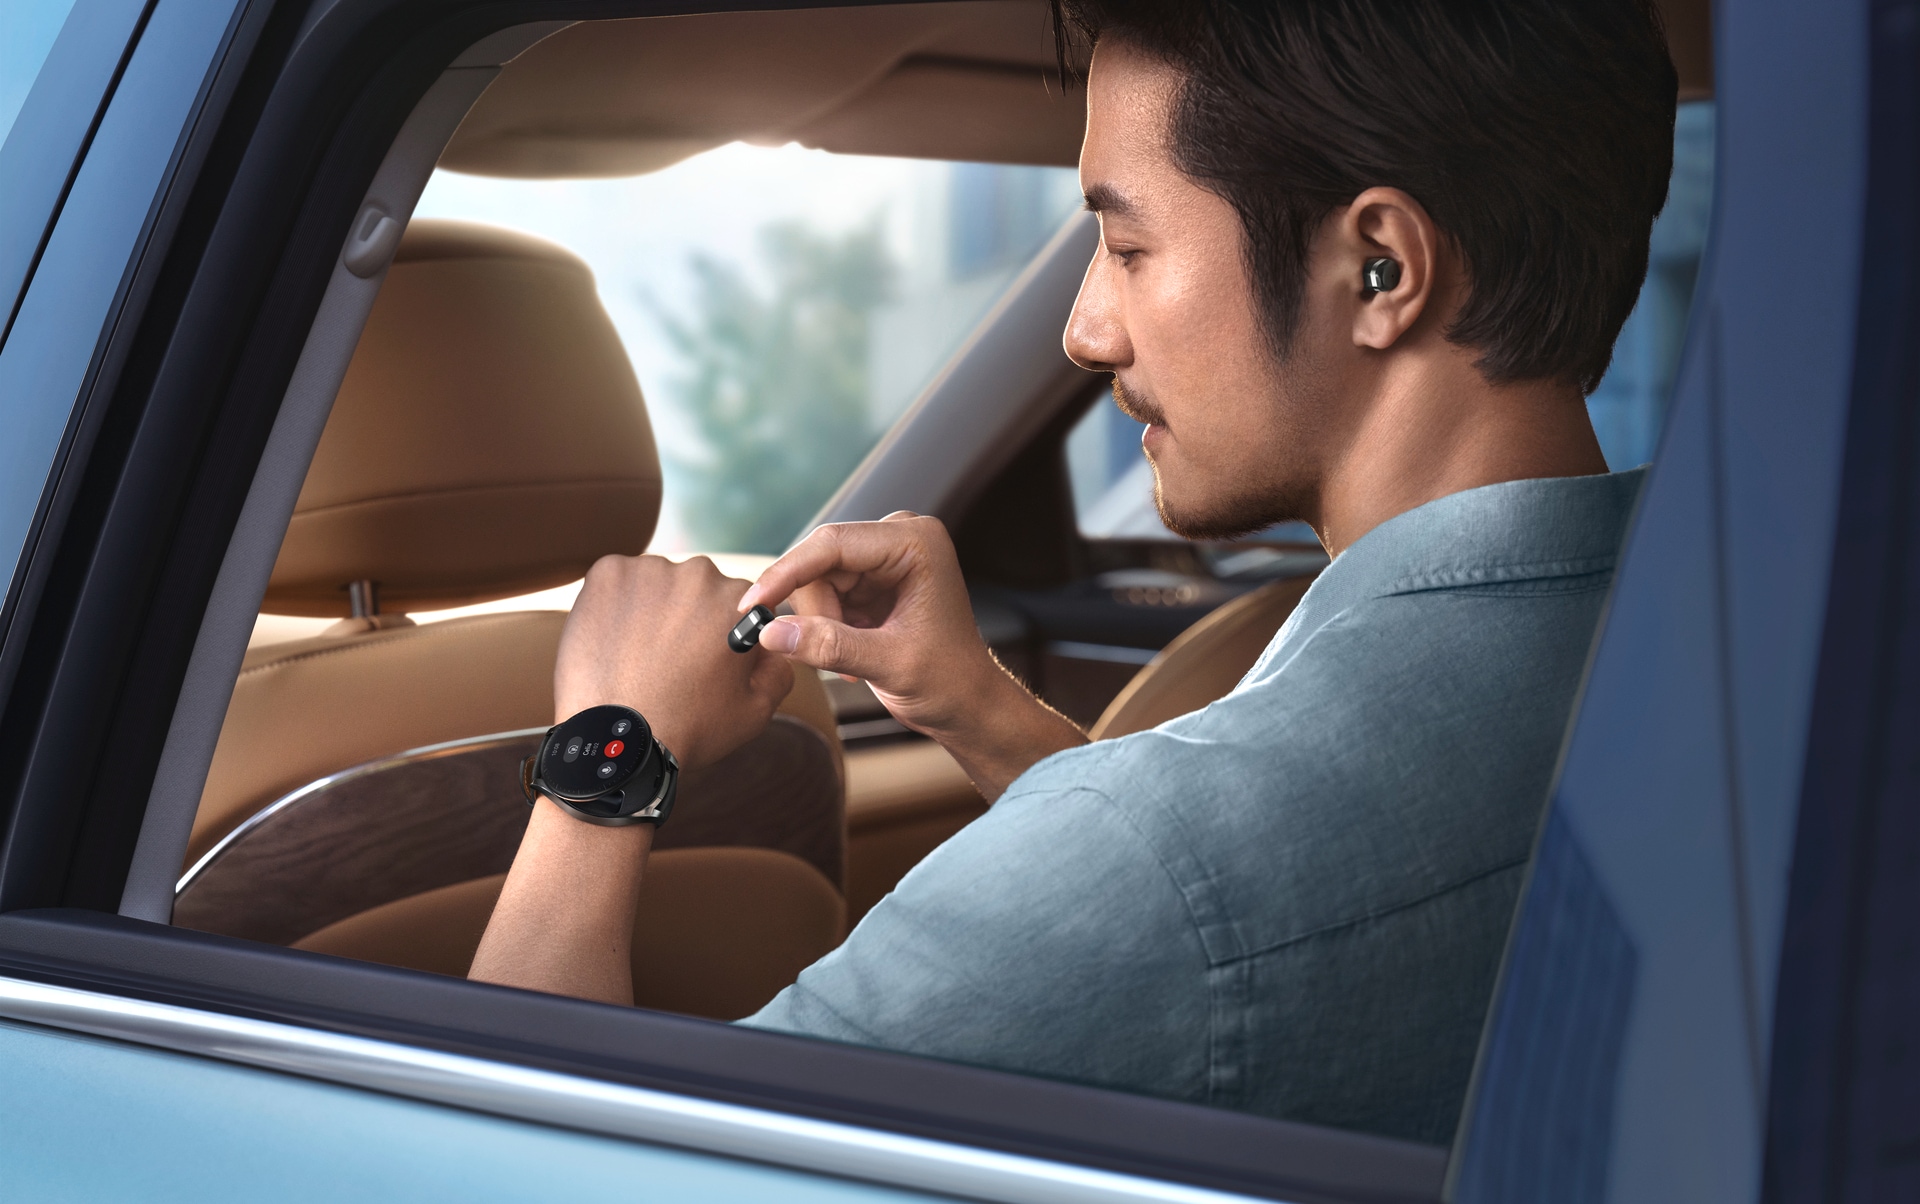 Huawei Smartwatch »WATCH Buds«, (Proprietär Kopfhörer und Smartwatch in  Einem) online bestellen | UNIVERSAL